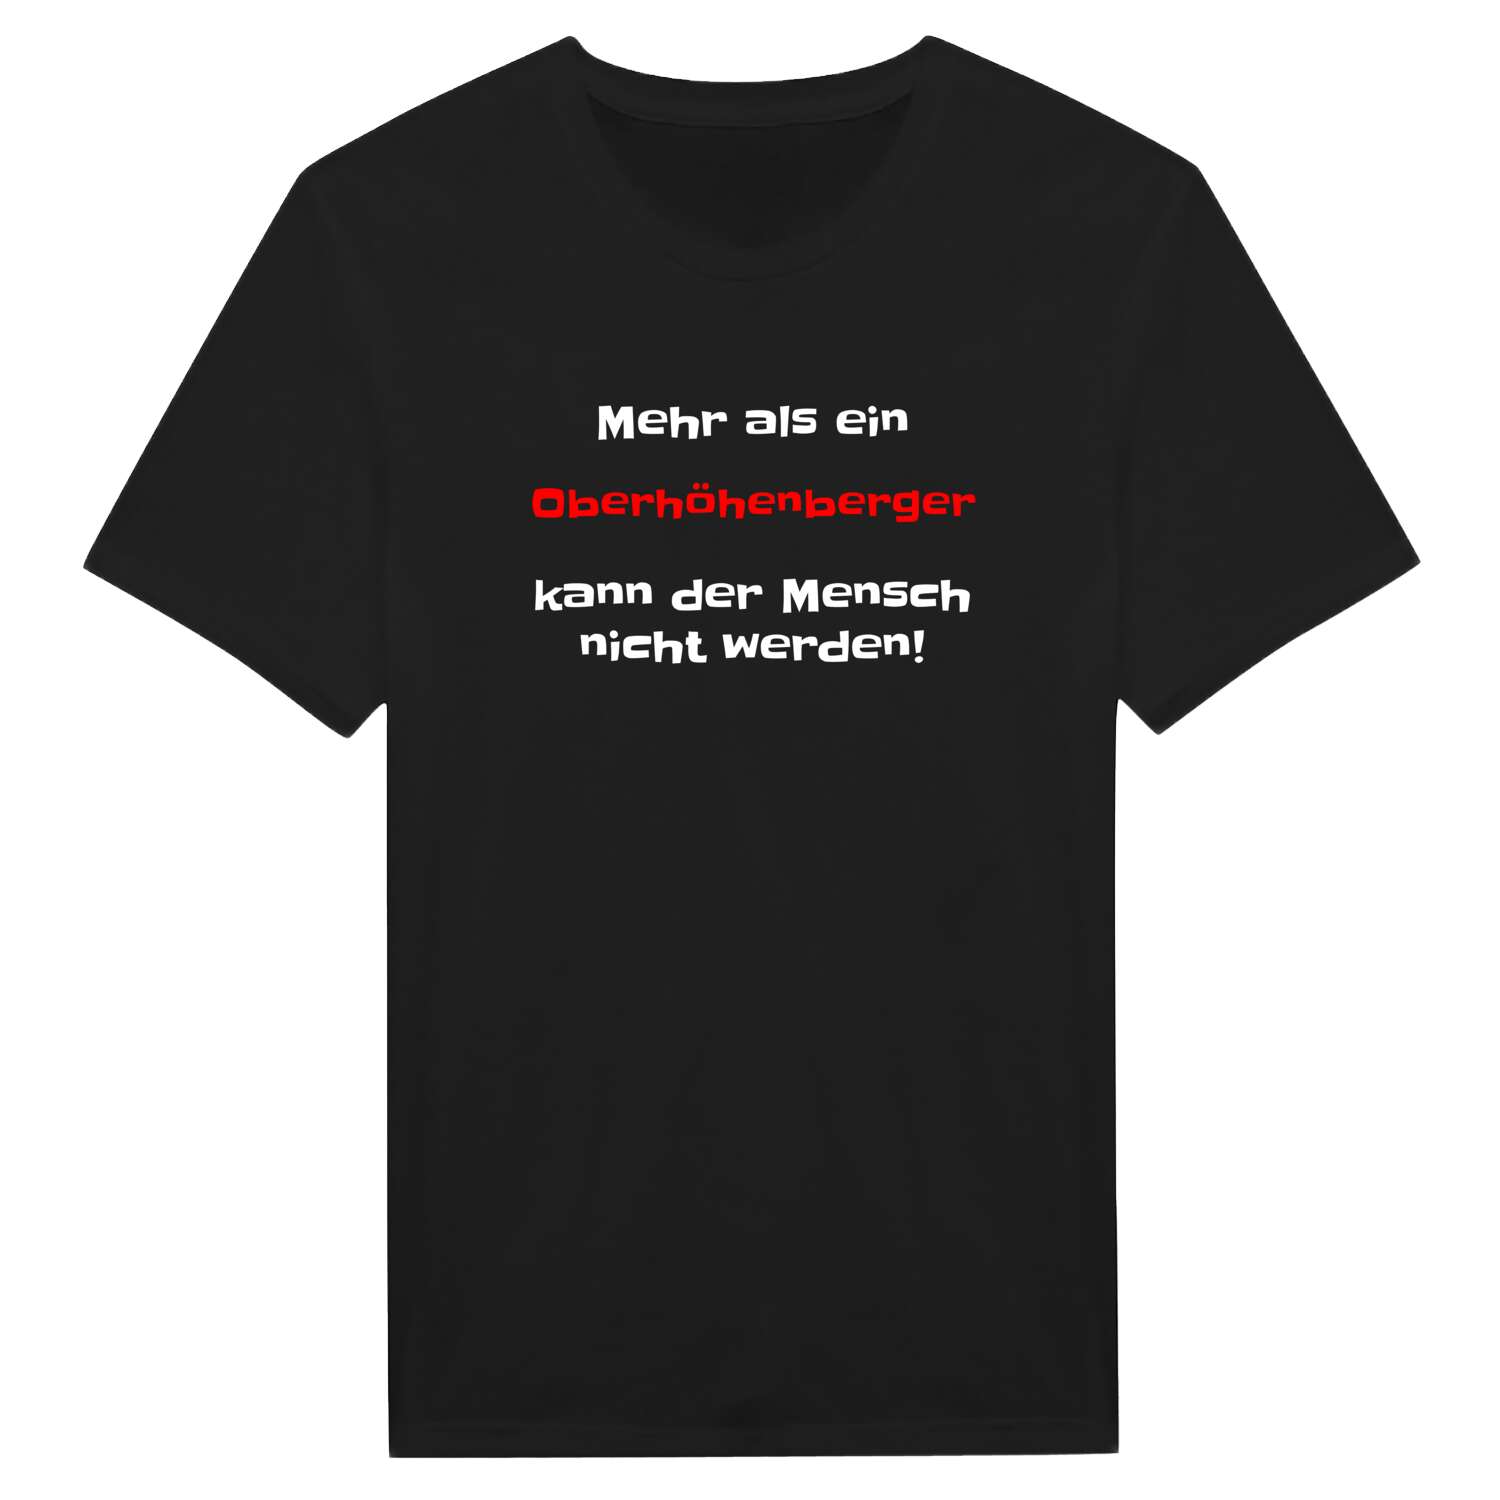 Oberhöhenberg T-Shirt »Mehr als ein«